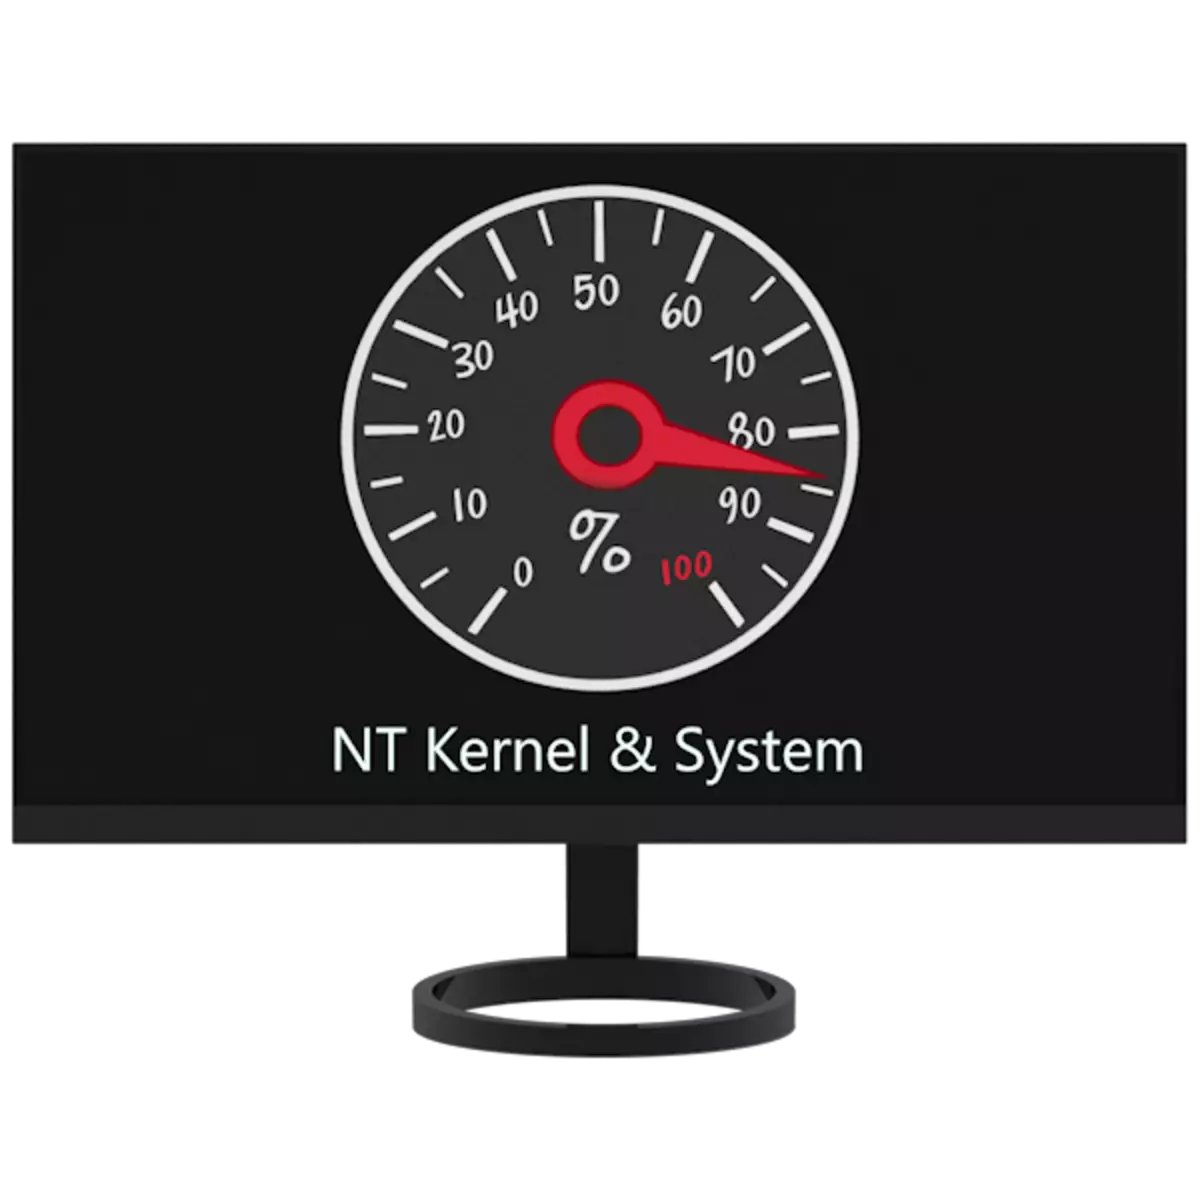 Nt kernel & systems drimical Windows 7 faiga